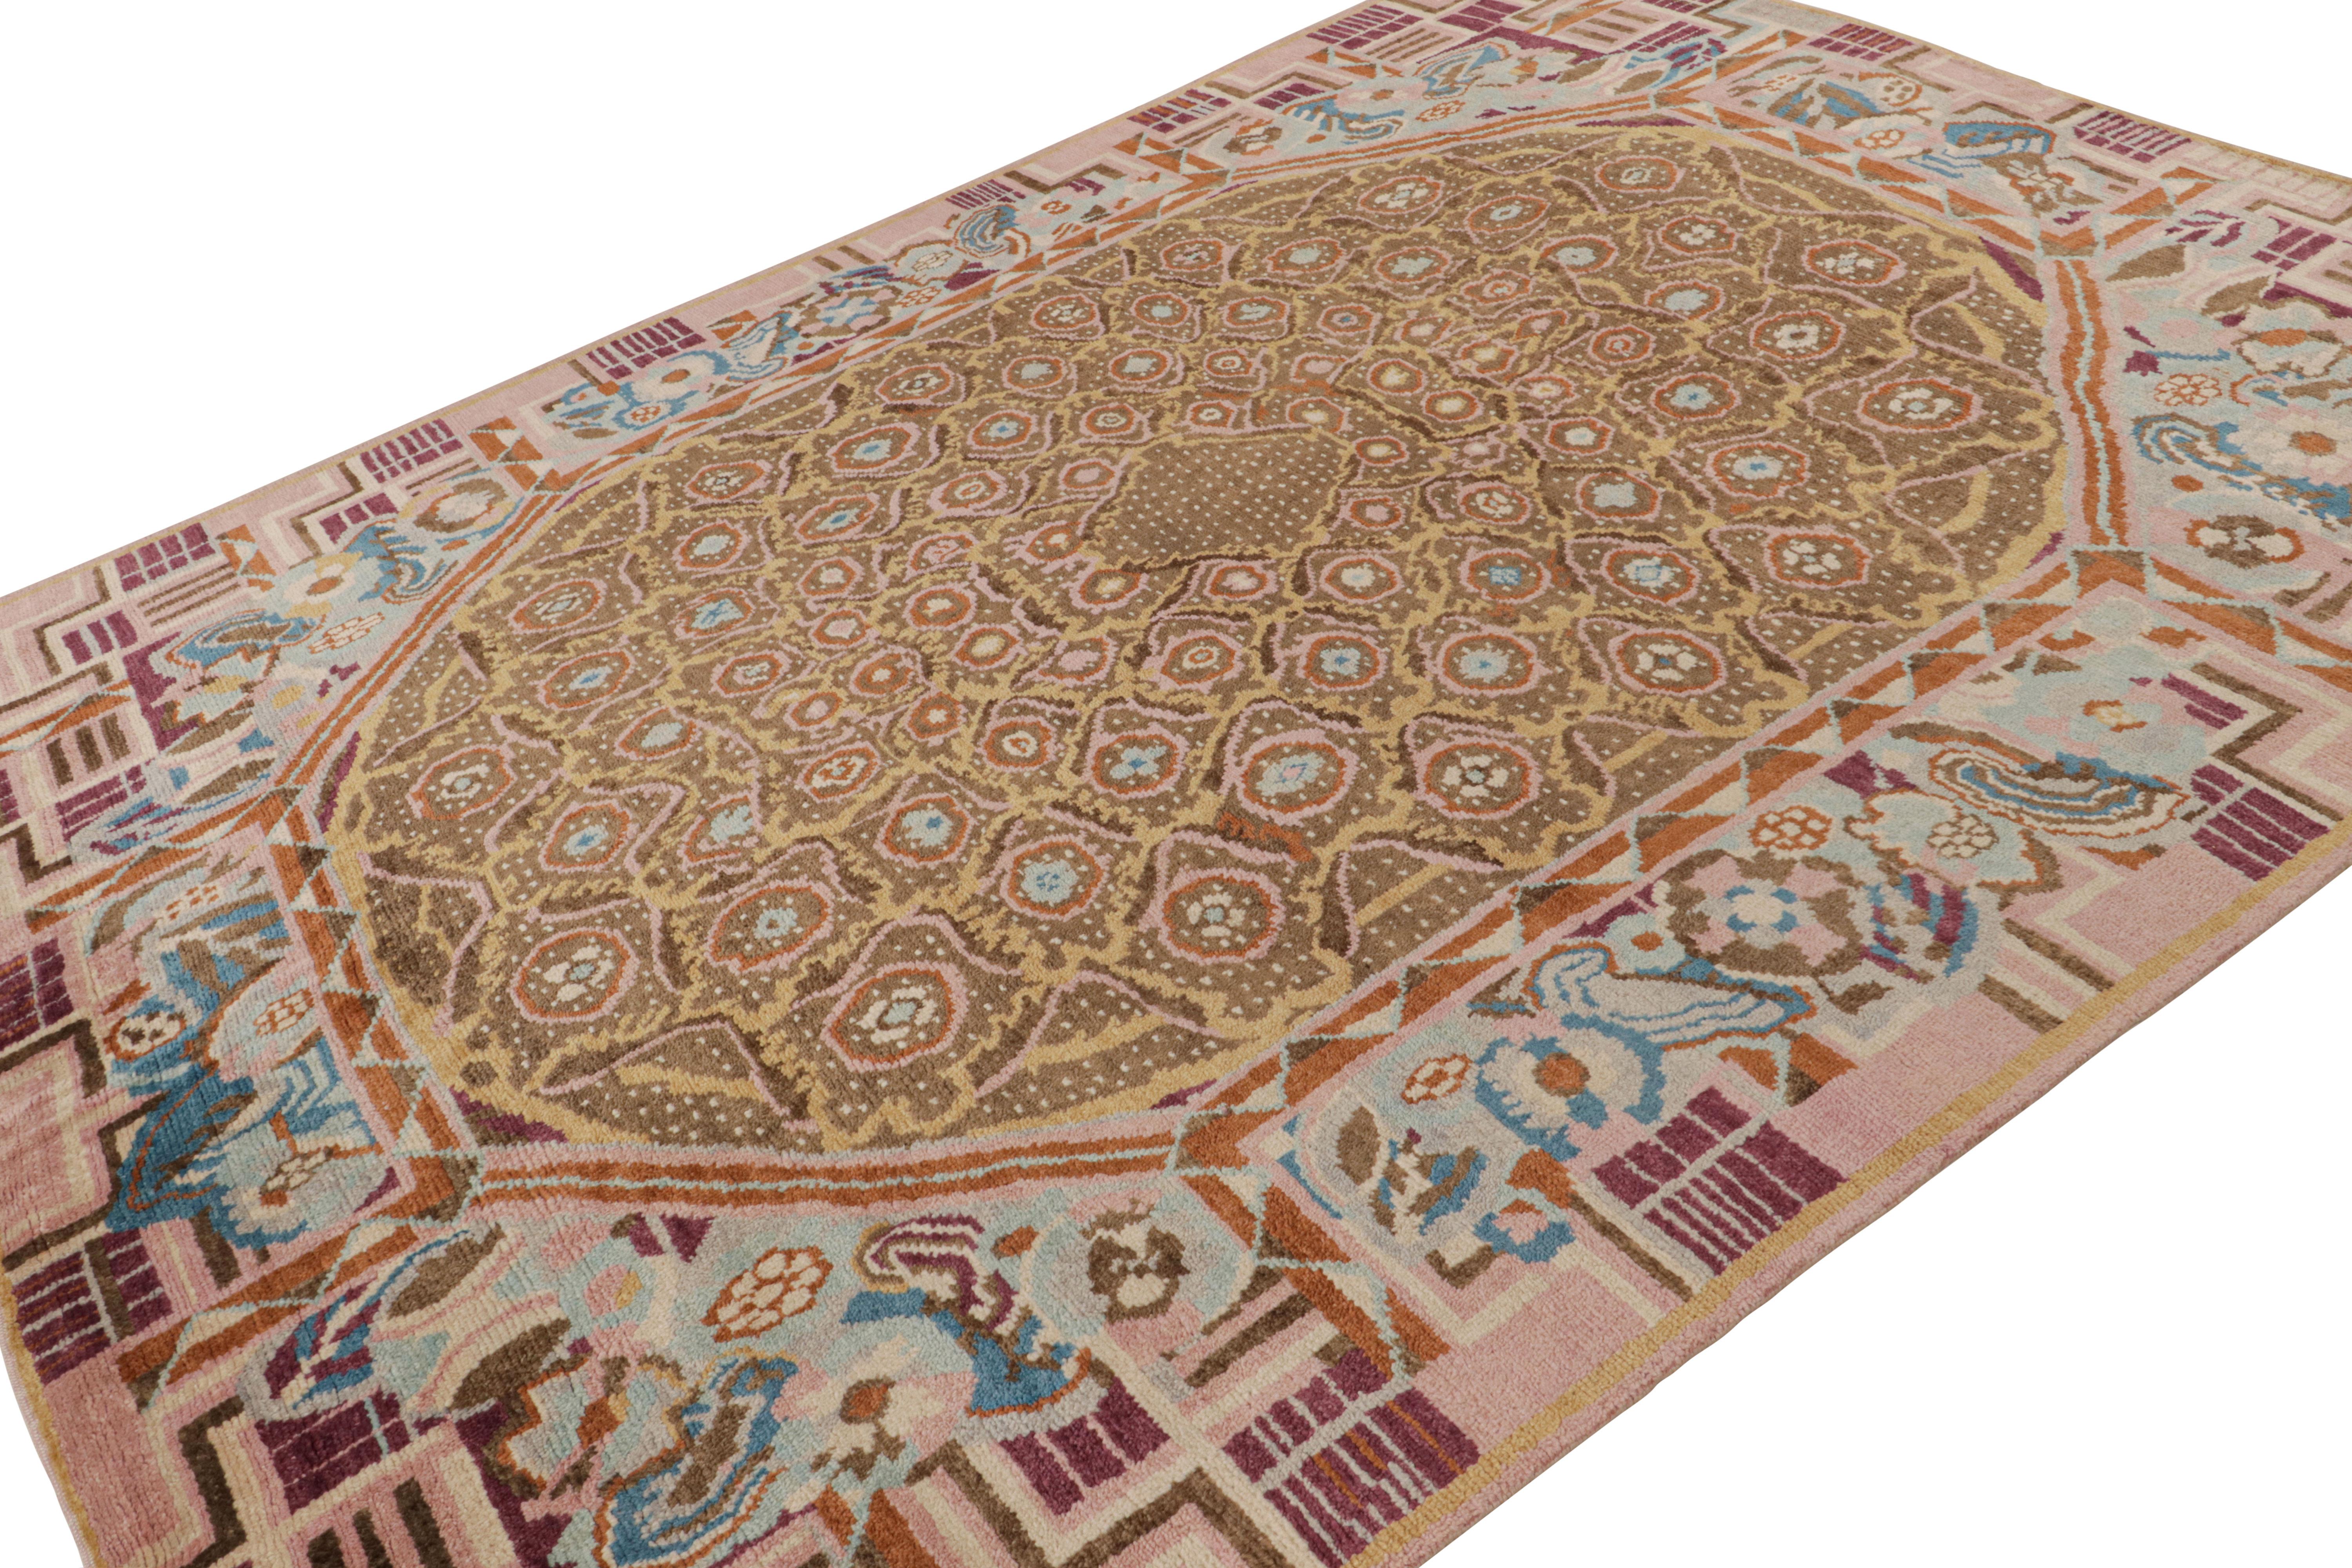 Noué à la main en laine, ce tapis moderne 8x11 de Rug & Kilim est un nouvel ajout à sa ligne de tapis Art déco français.

Sur le Design : 

Cette pièce colorée présente des motifs géométriques polychromes avec des tons roses et beige-brun